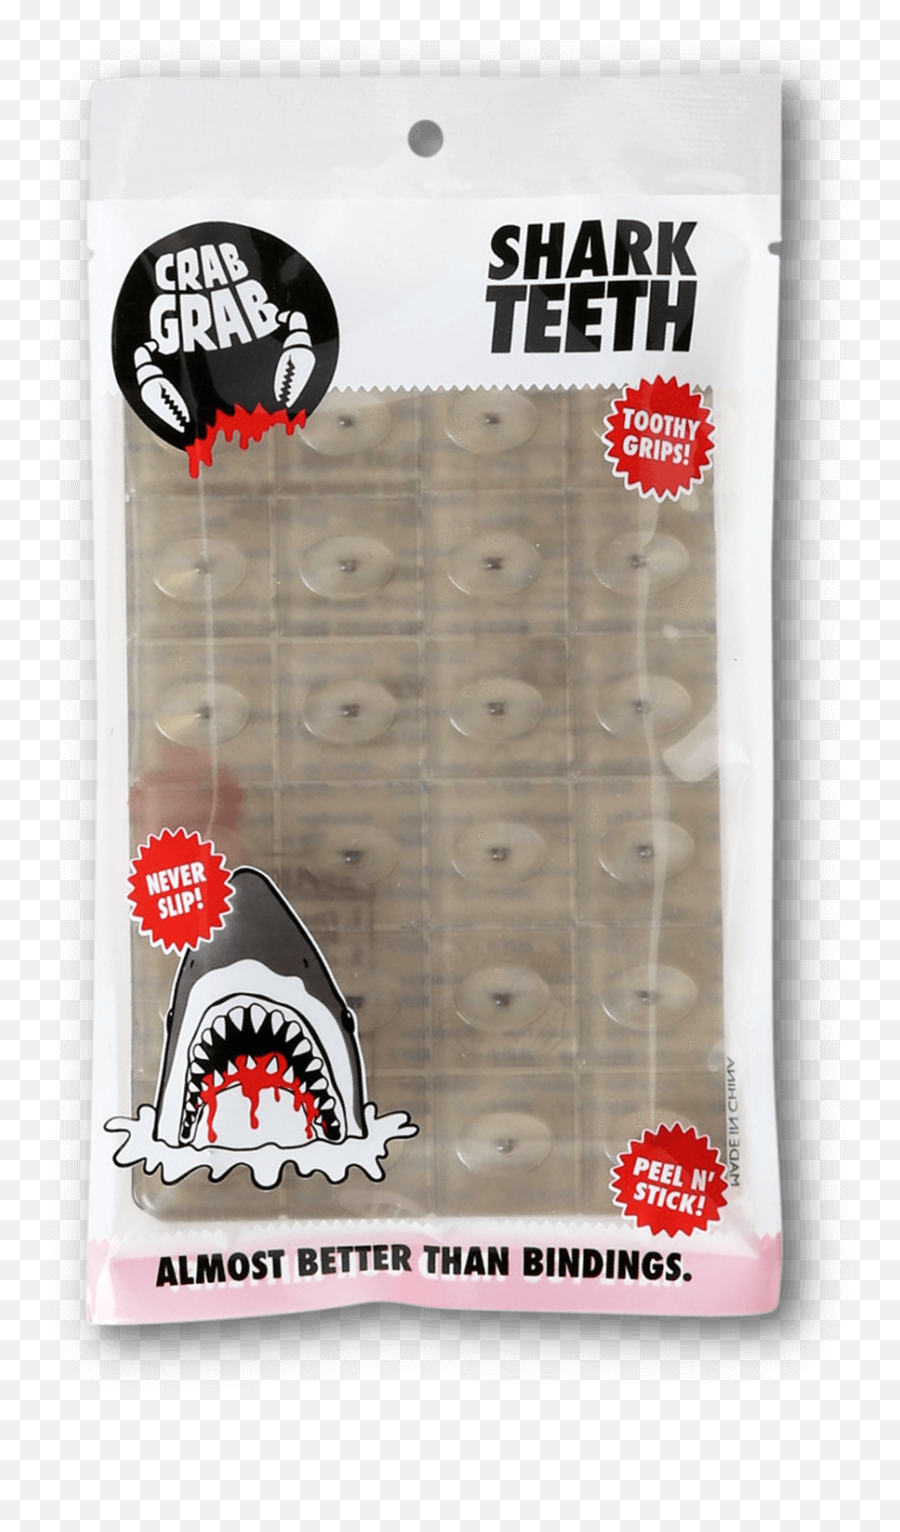 Shark Teeth - Crab Grab Clear Shark Teeth Png,Shark Teeth Png